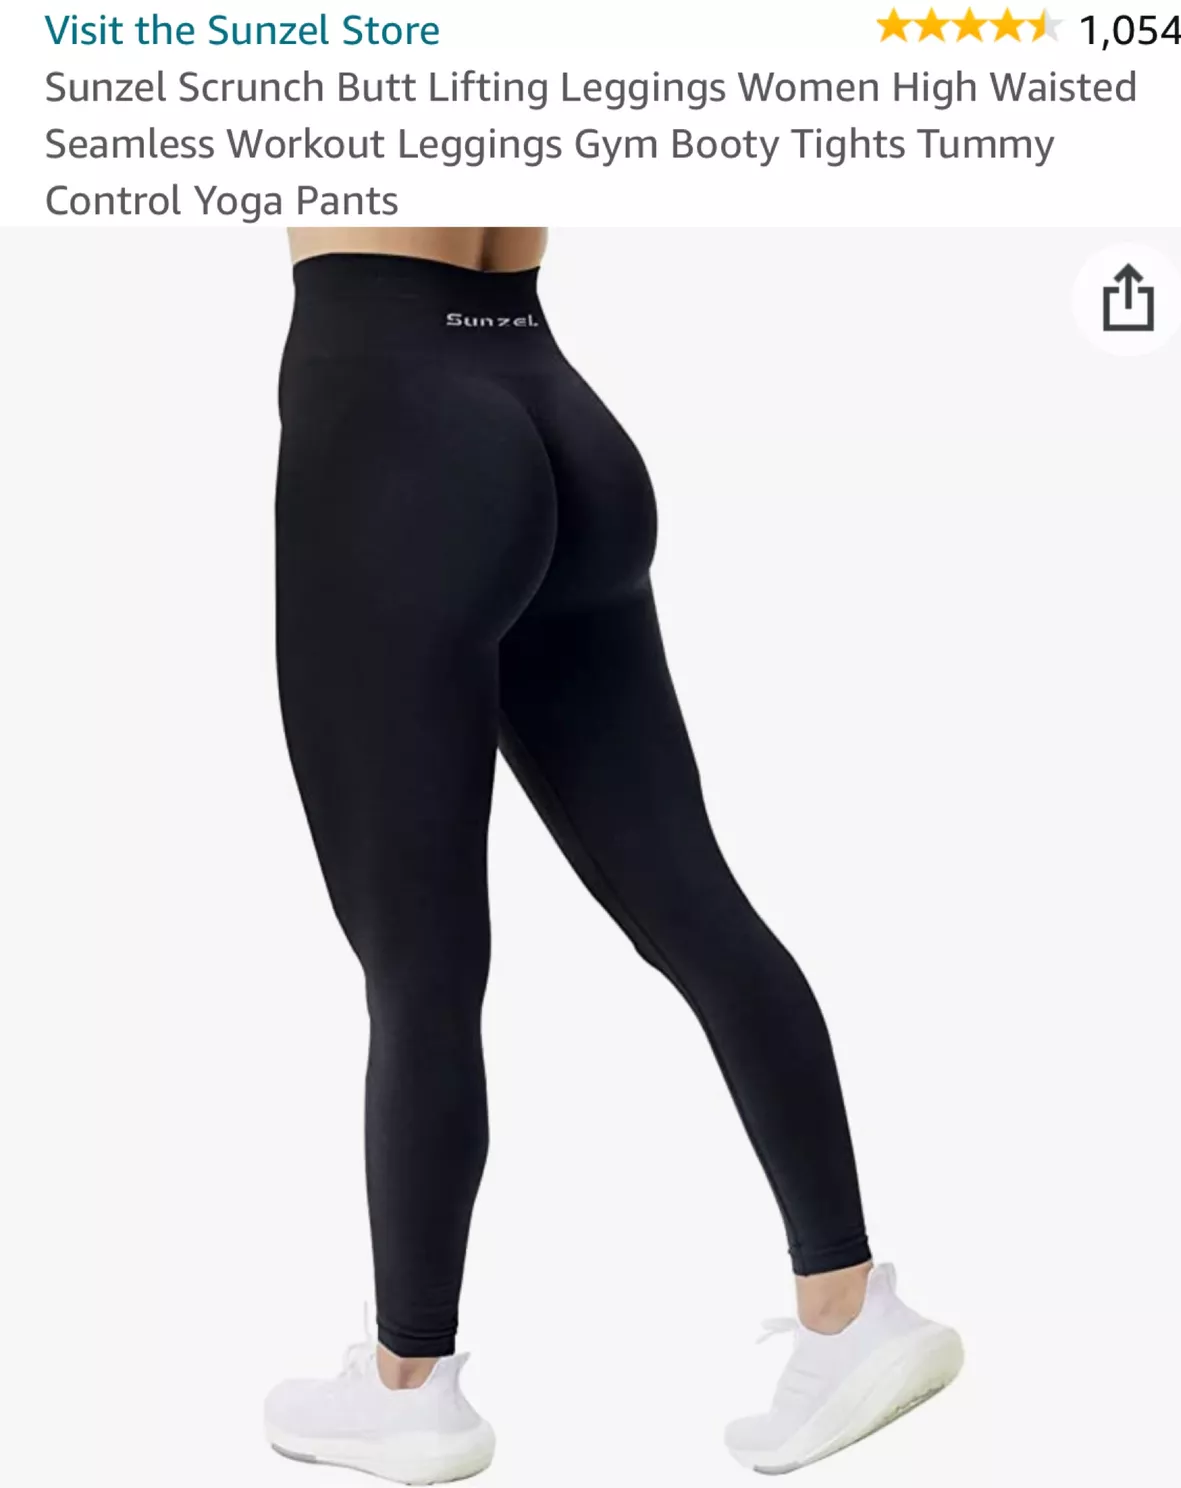 Buy Sunzel Scrunch Butt Lifting Leggings for Women High Waisted